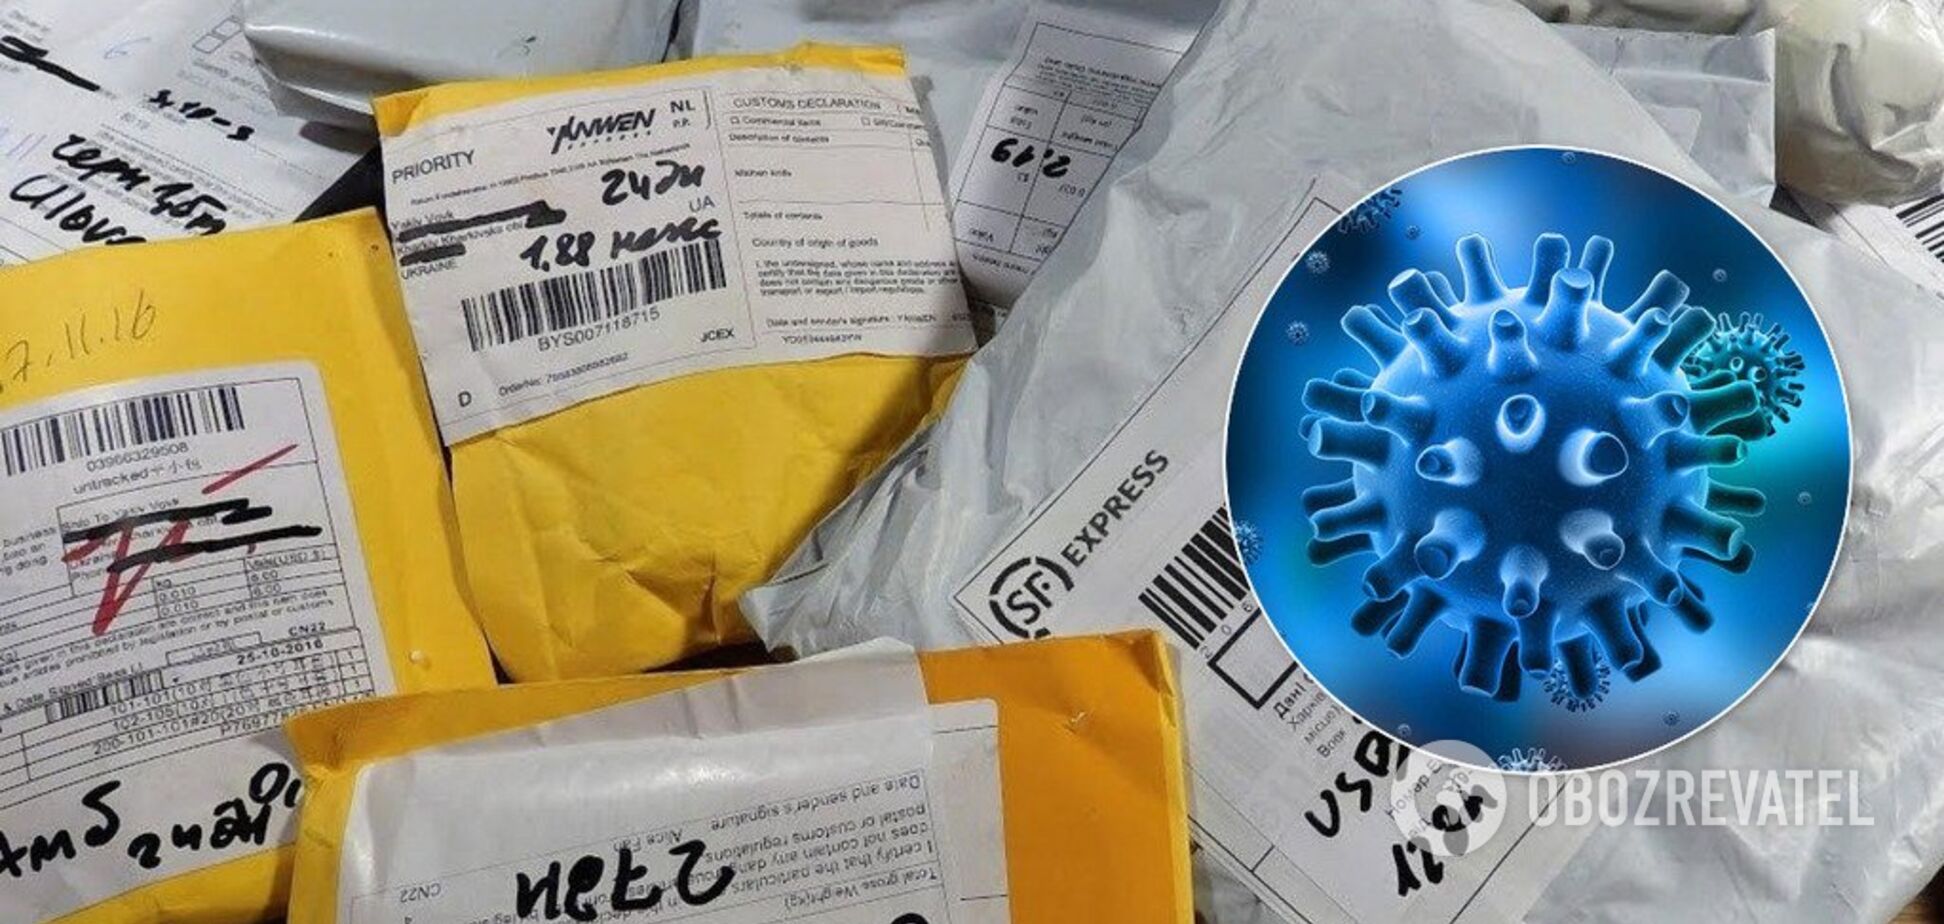 Посылки из Китая: можно ли заразиться коронавирусом через почту